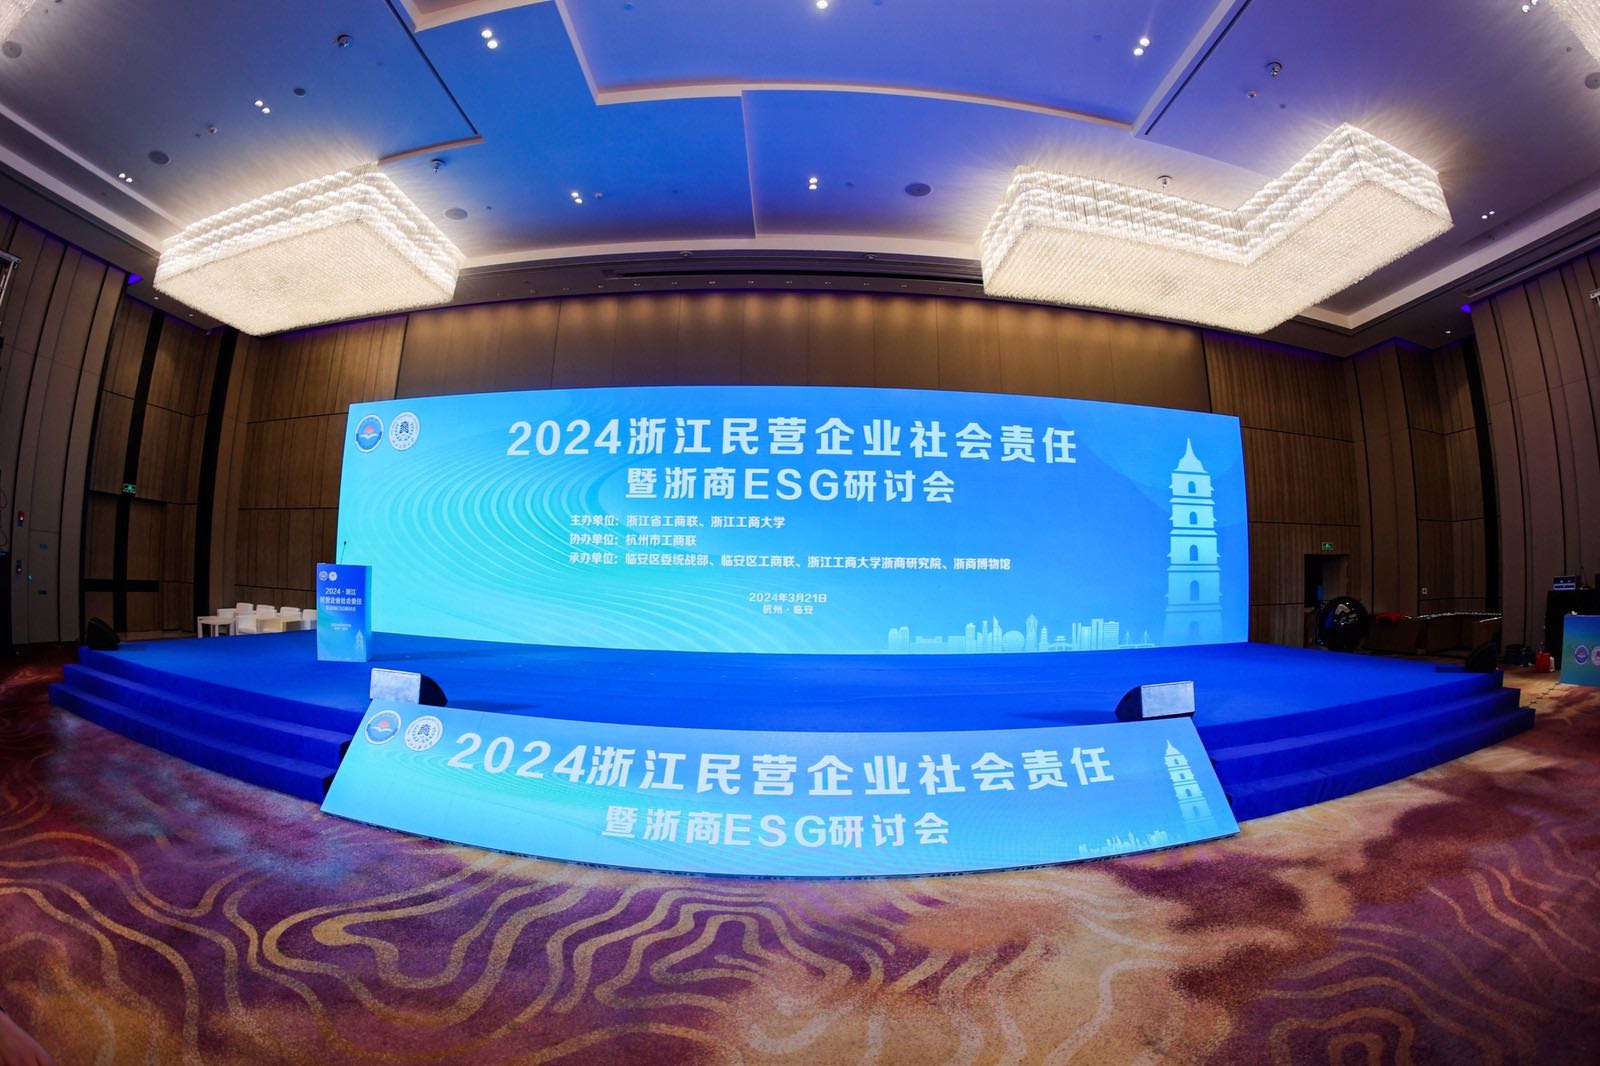 Momento de Gloria |ERA fue seleccionada como una de las 100 empresas privadas líderes en Zhejiang en términos de responsabilidad social.